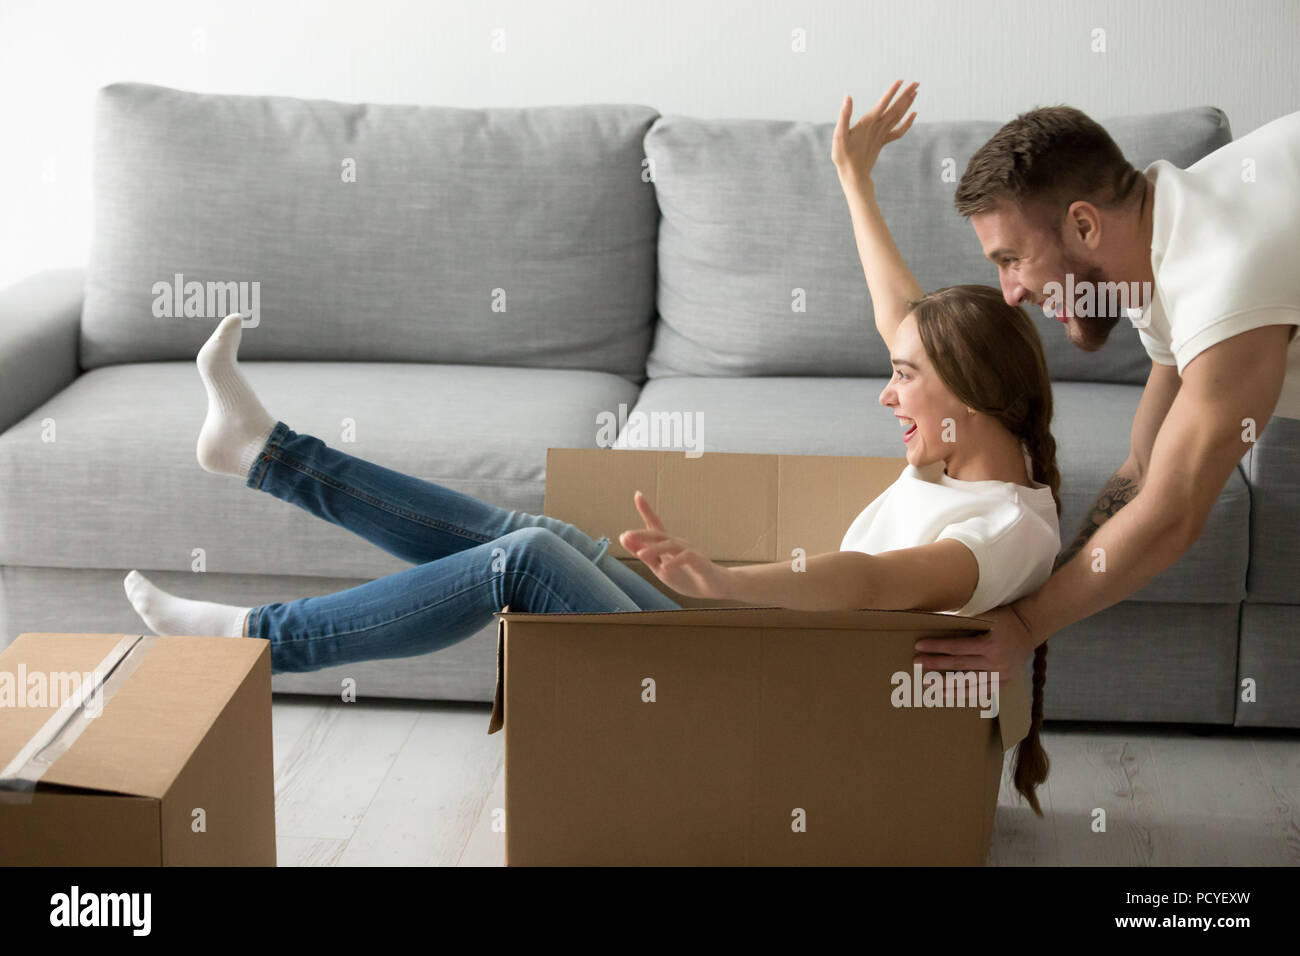 Heureux couple riding dans les cases s'amusant unpacking boxes Banque D'Images